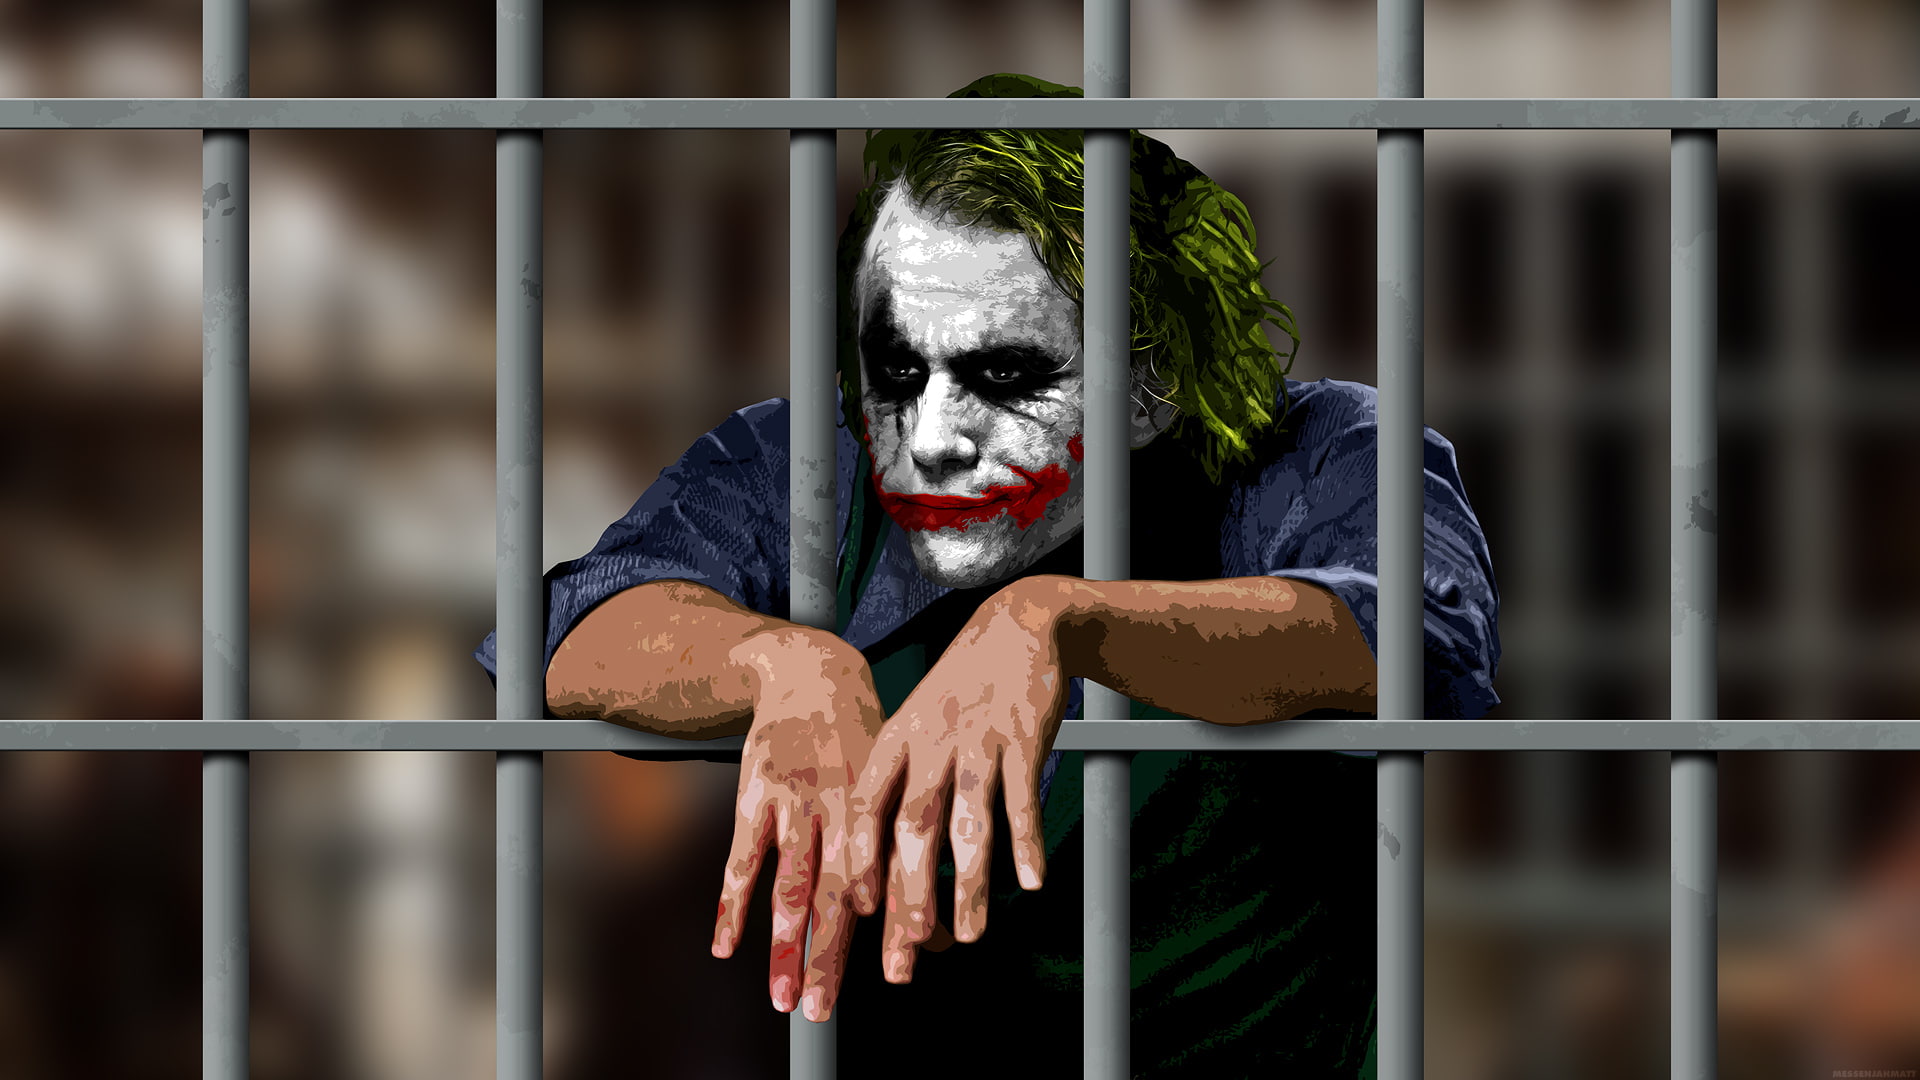 Joker Jail Batman The Dark Knight HD, movies